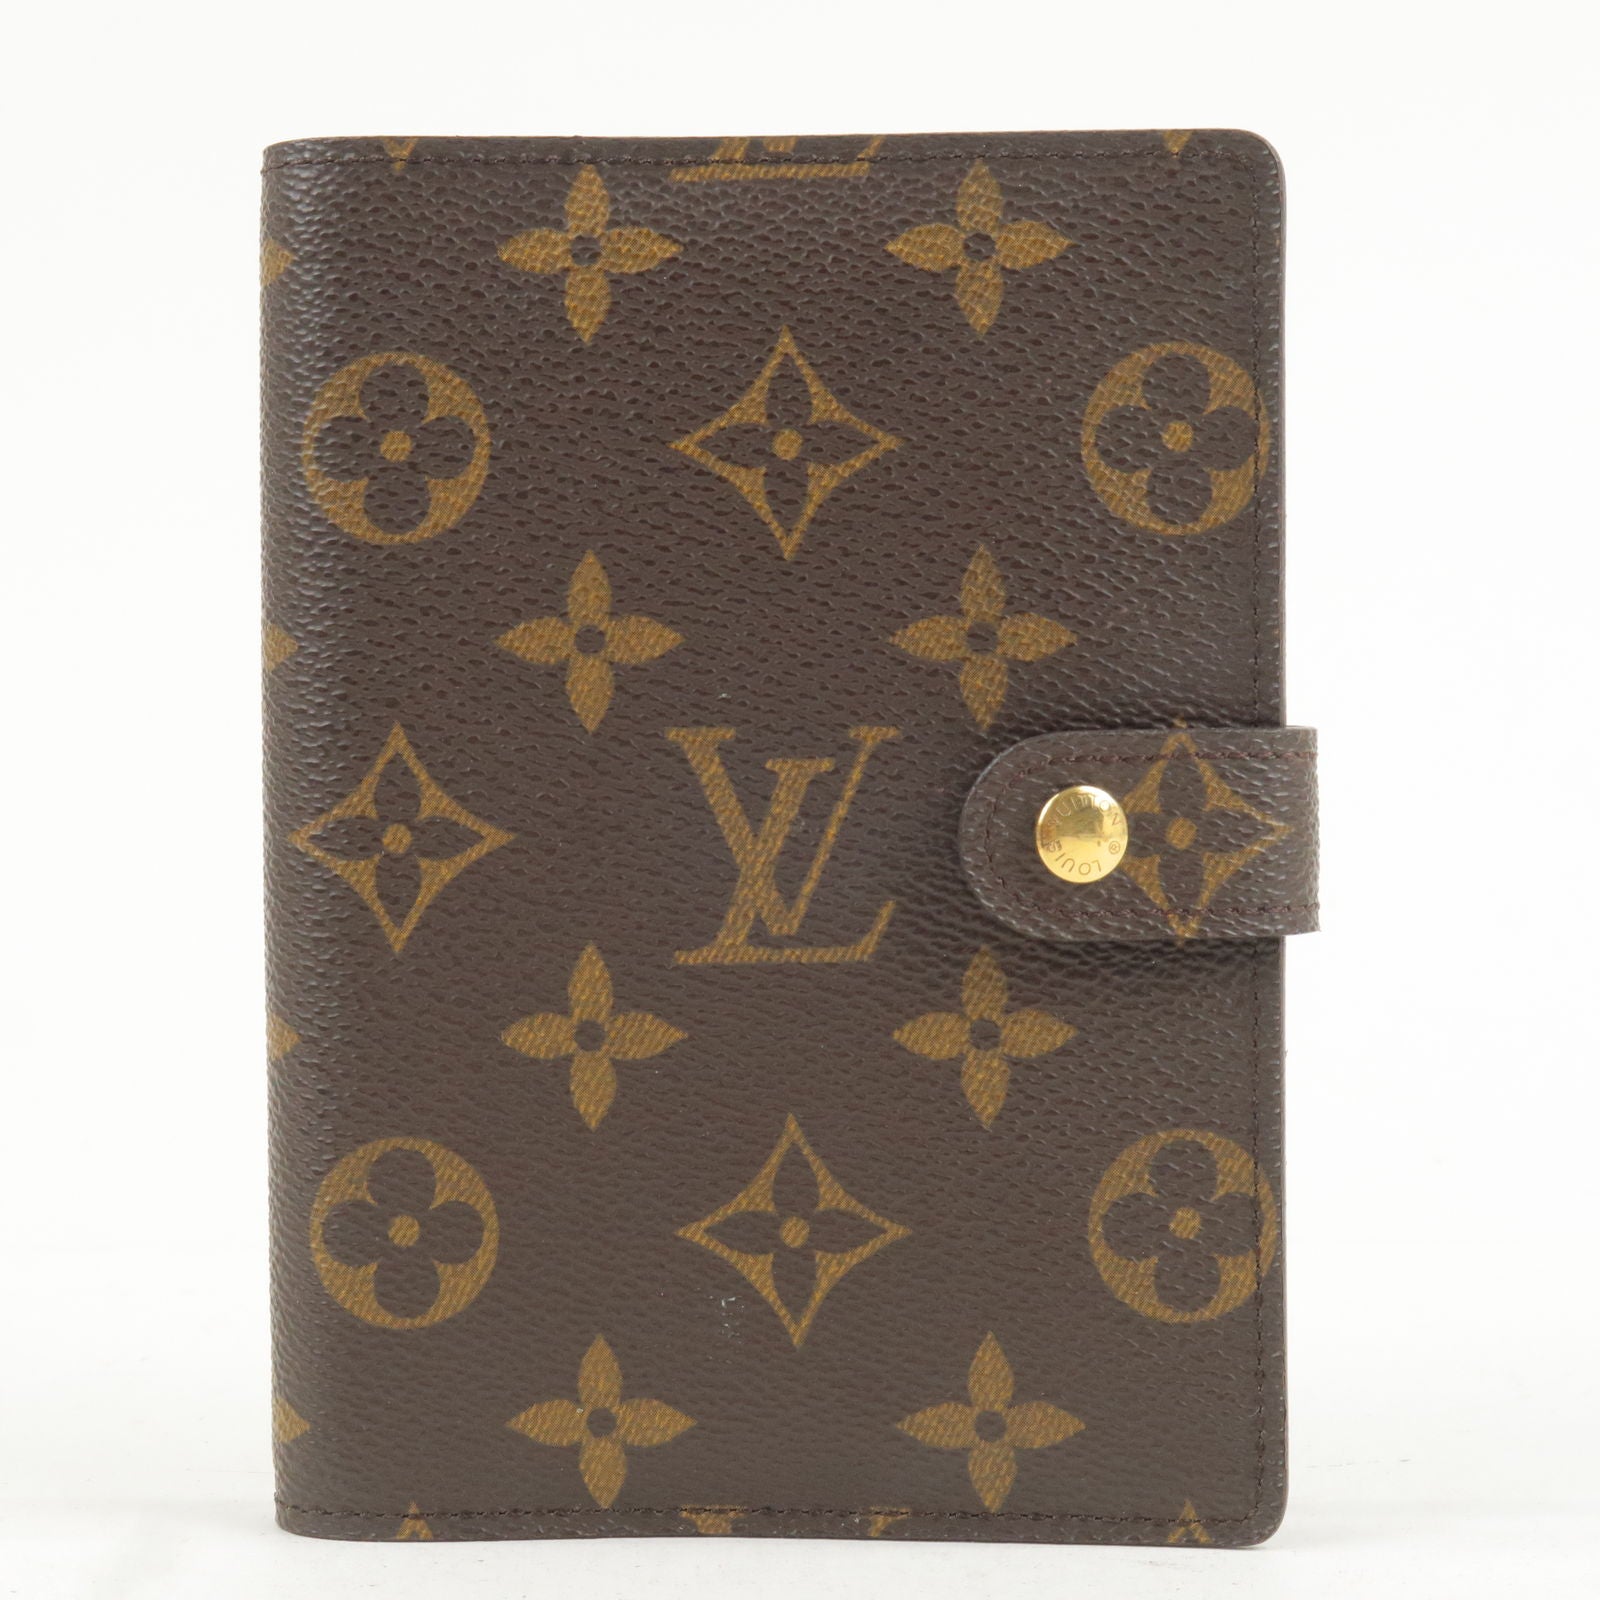 Vintage Louis Vuitton Monogram PM/Pocket Sized Agenda/Planner Unboxing